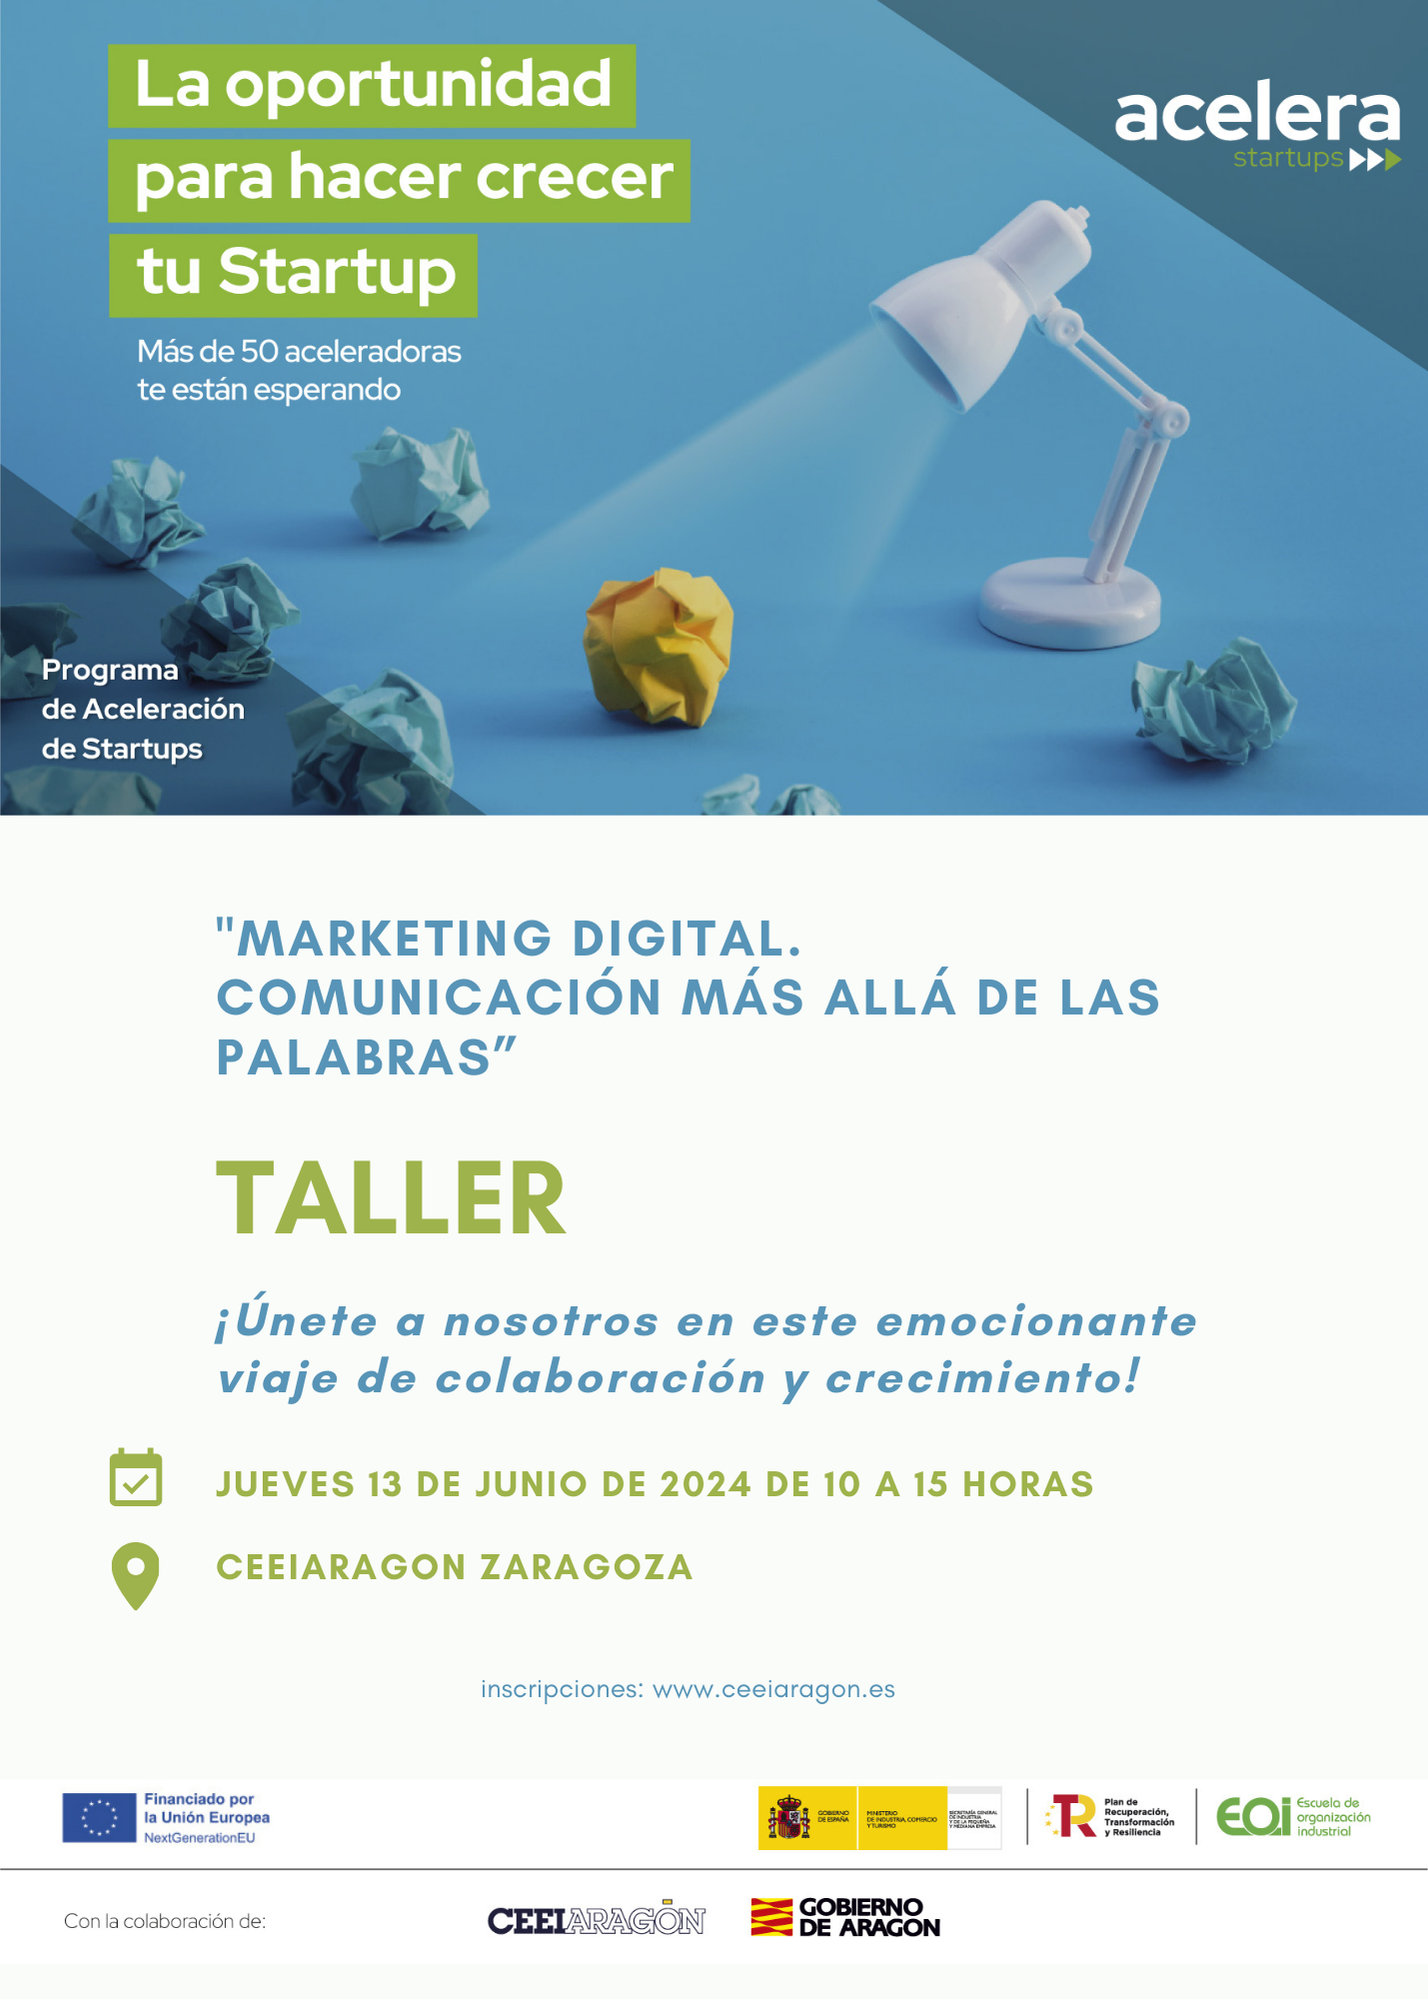 Acelera Startups Program Workshop “Digital Marketing. Communication beyond words”